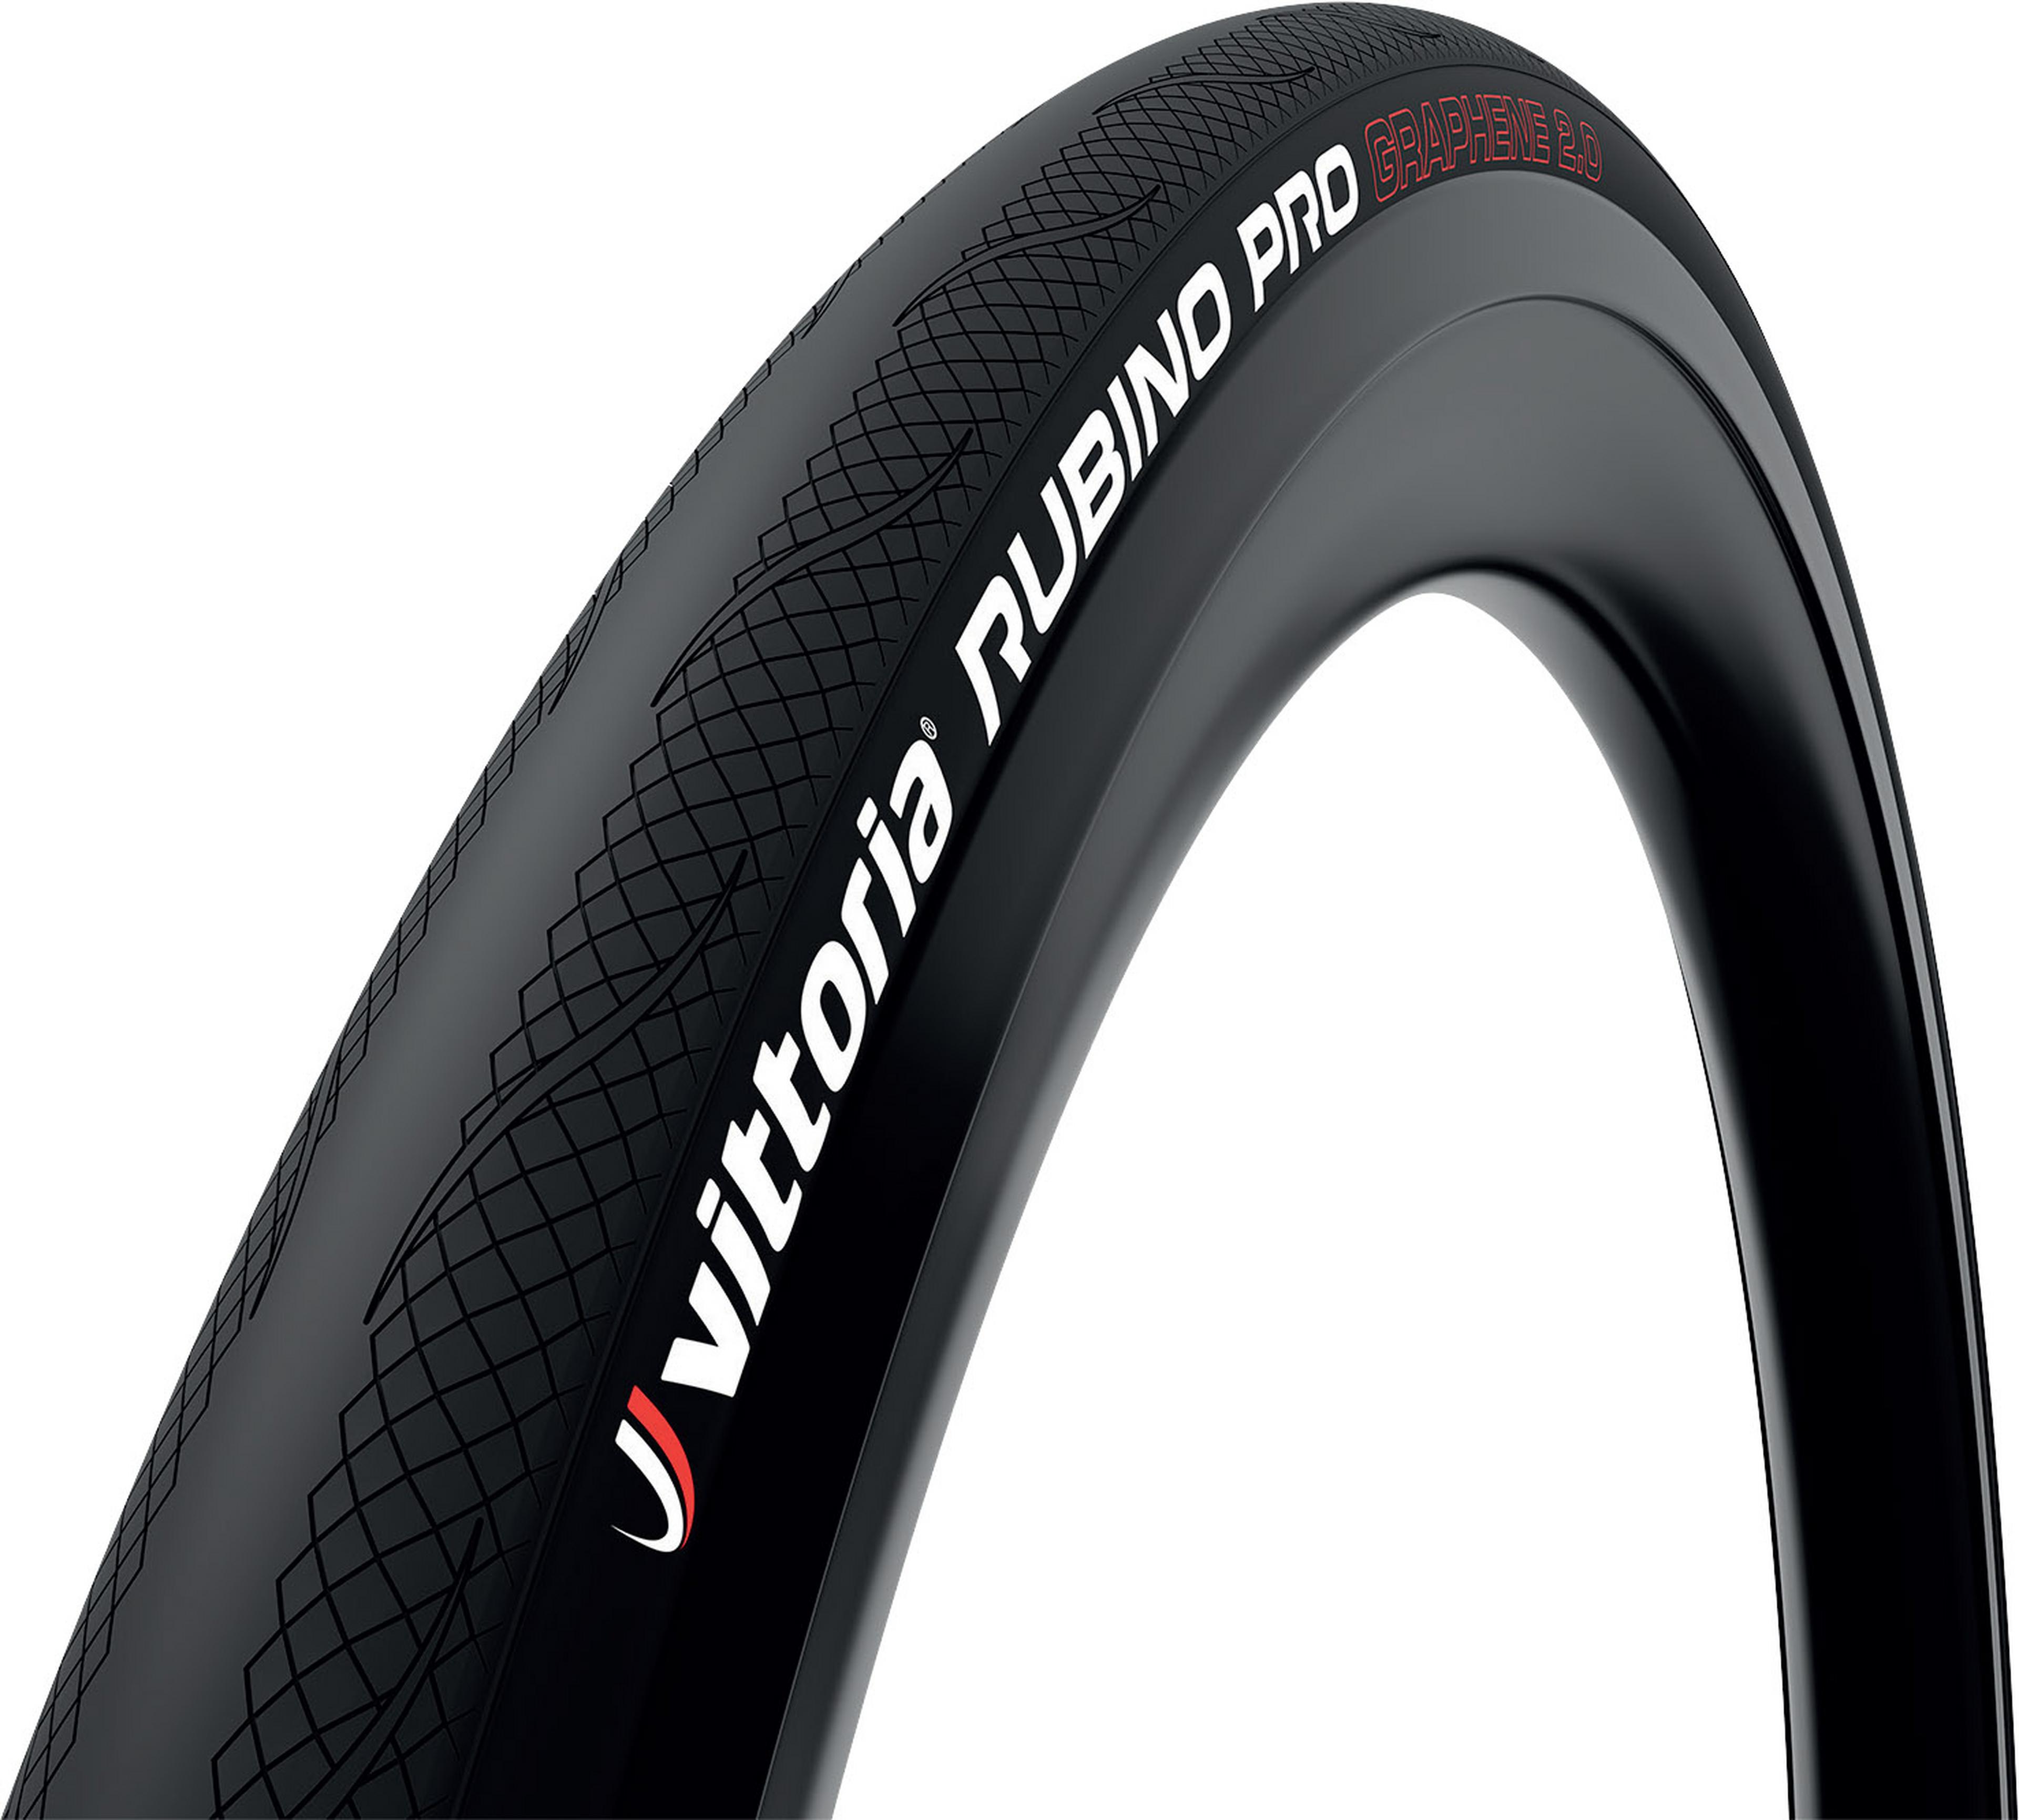 Vittoria Rubino Pro IV G2.0 Road Tyre - Tubular